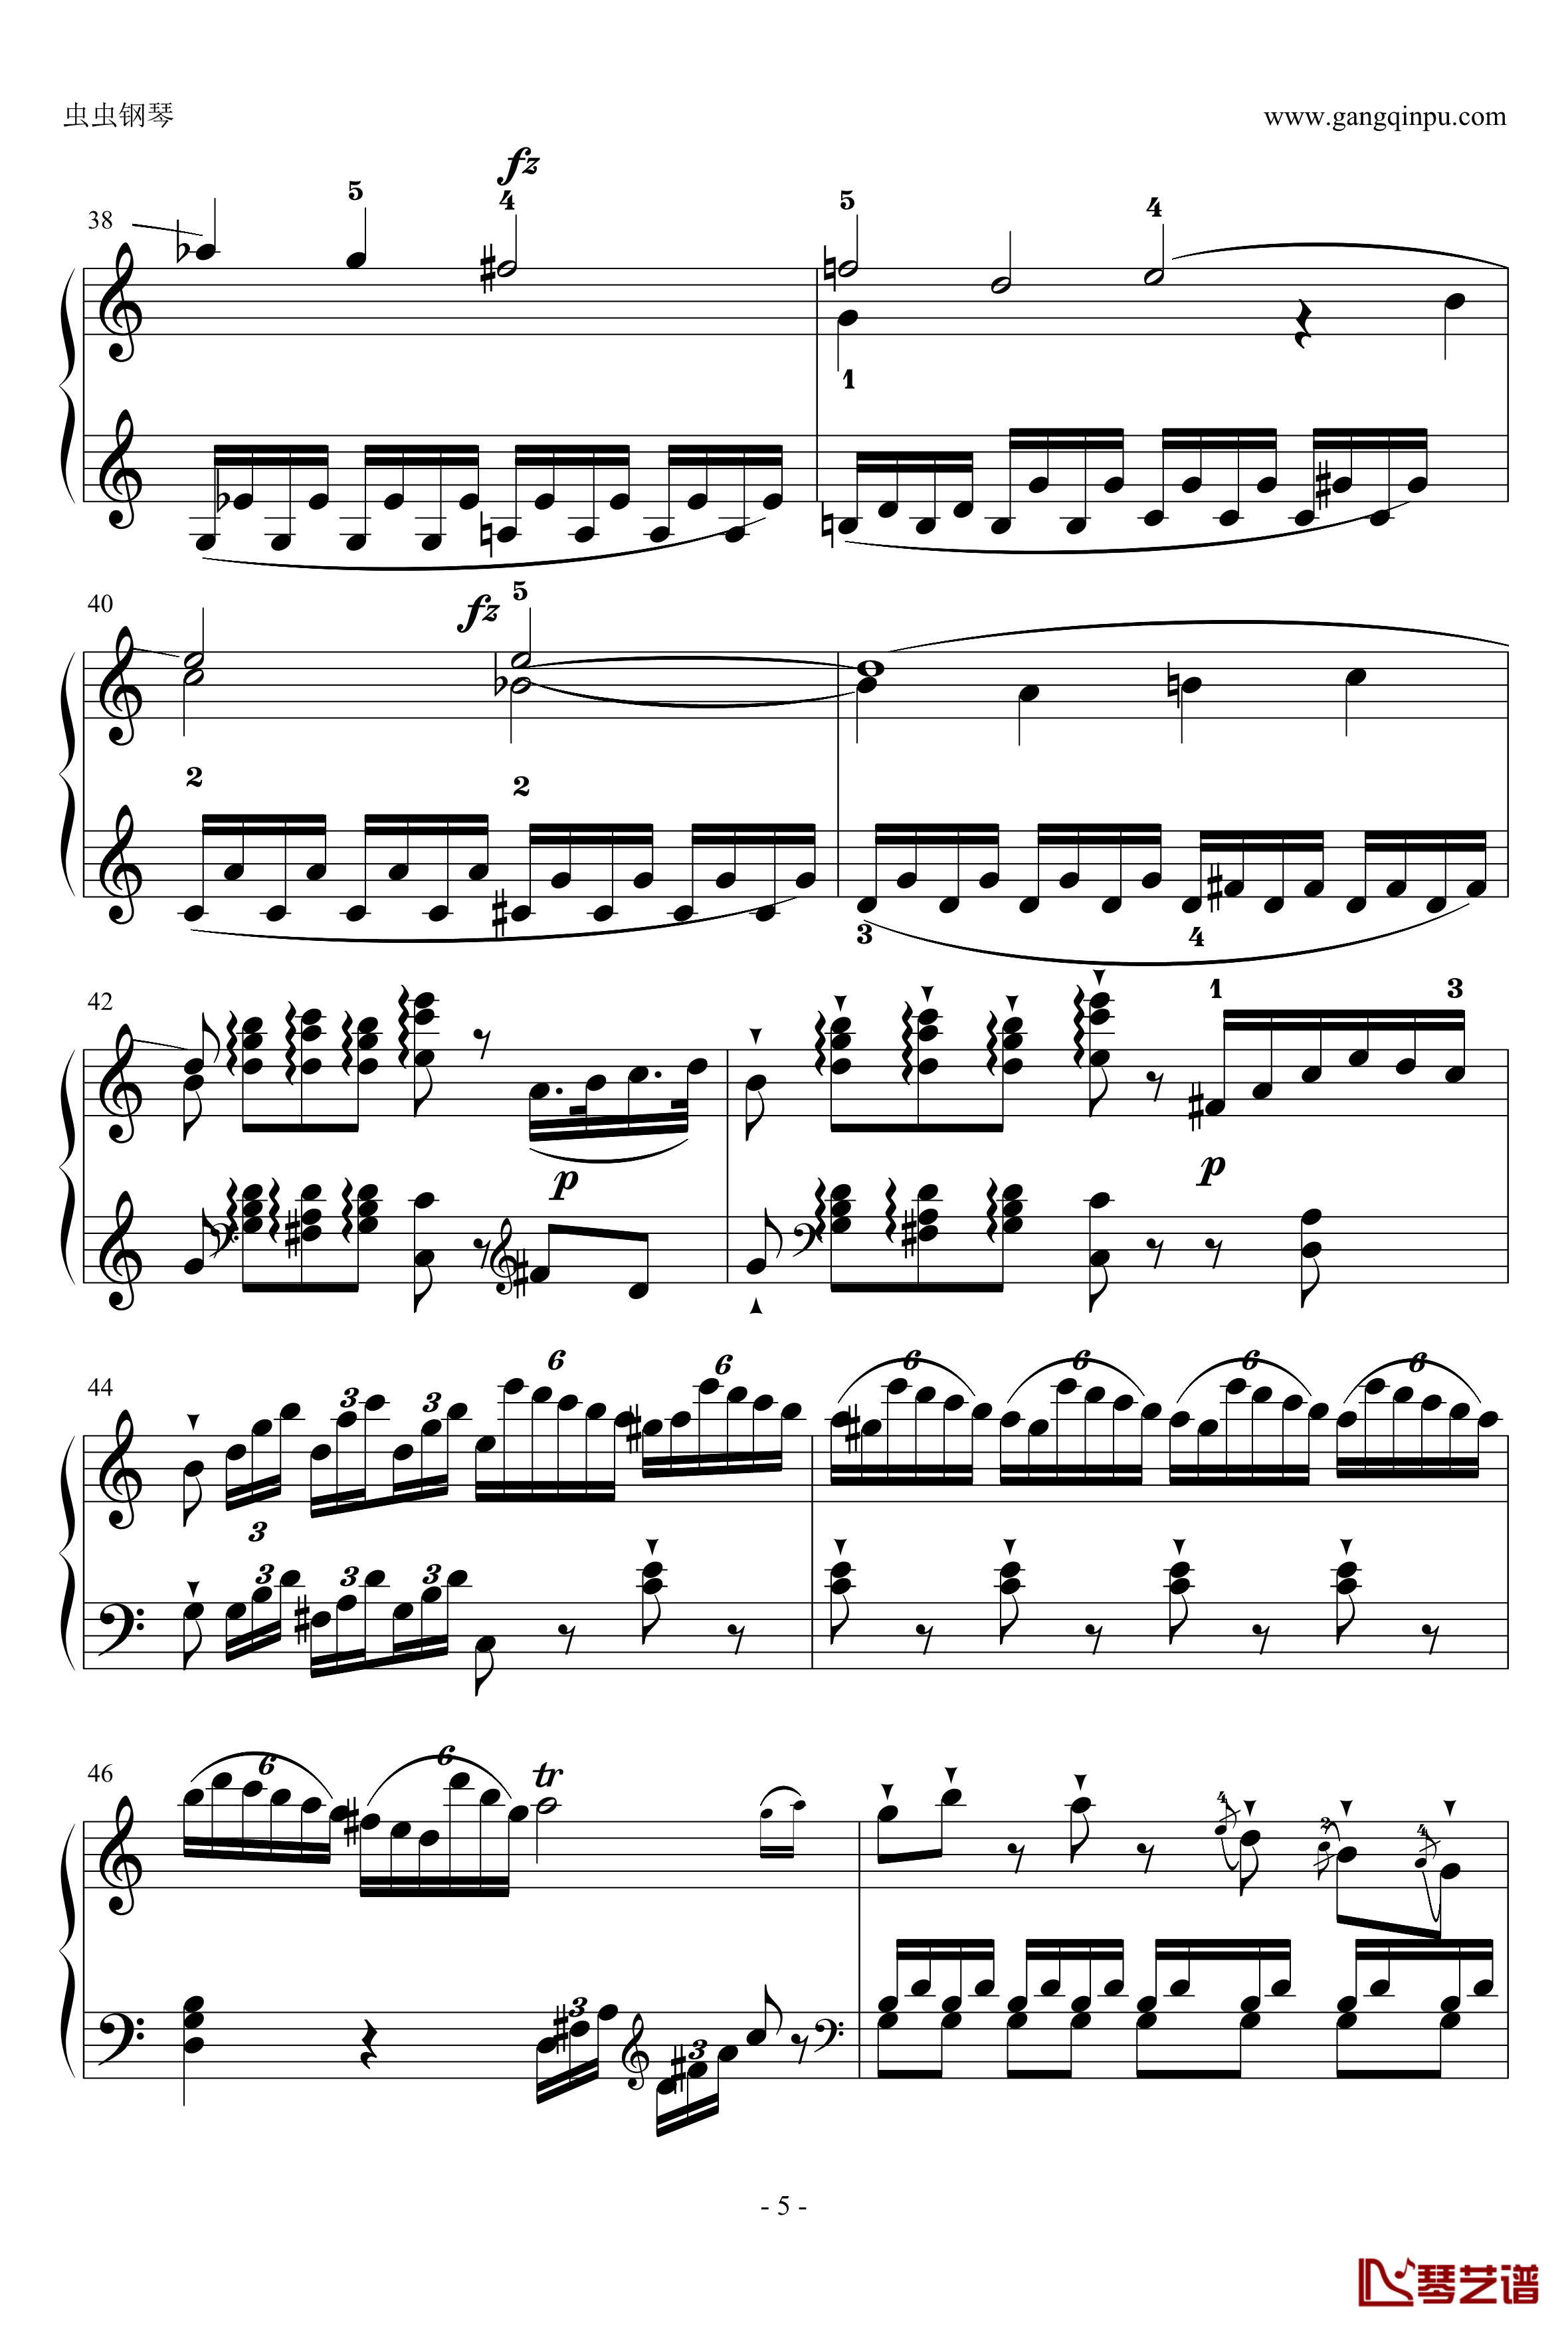 C大调奏鸣曲钢琴谱第一乐章-海顿5